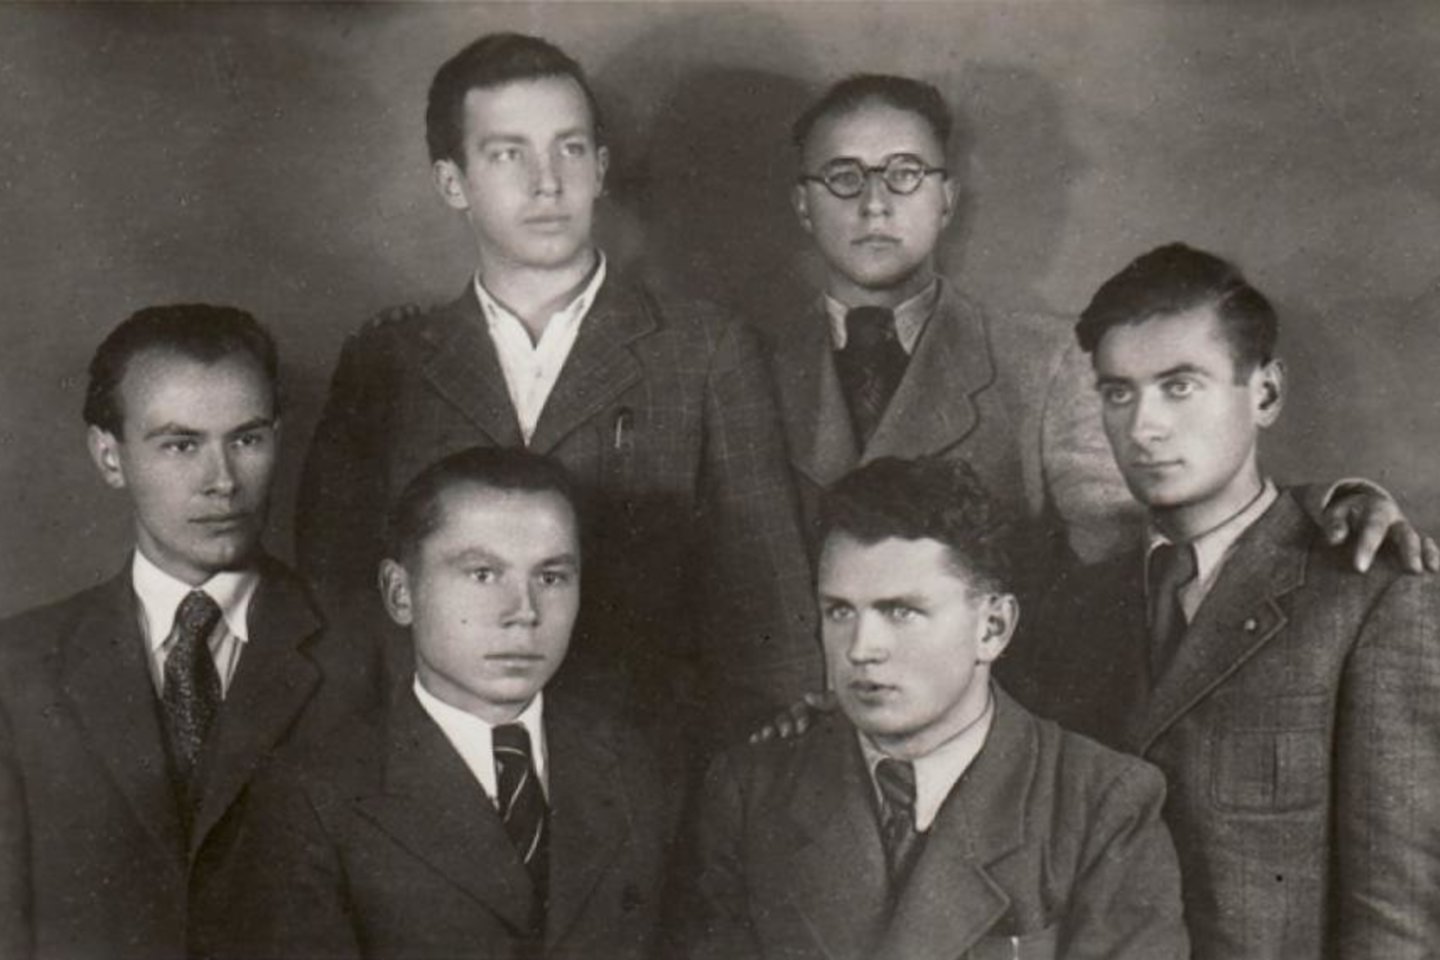 Iš kairės pirmoje eilėje: Paulius Jurkus, Kazys Bradūnas, Mamertas Indriliūnas, Vytautas Mačernis. Antroje eilėje stovi Eugenijus Matuzevičius ir Bronius Krivickas (Vilnius, 1942 m.). <br>Maironio lietuvių literatūros muziejaus nuotr.